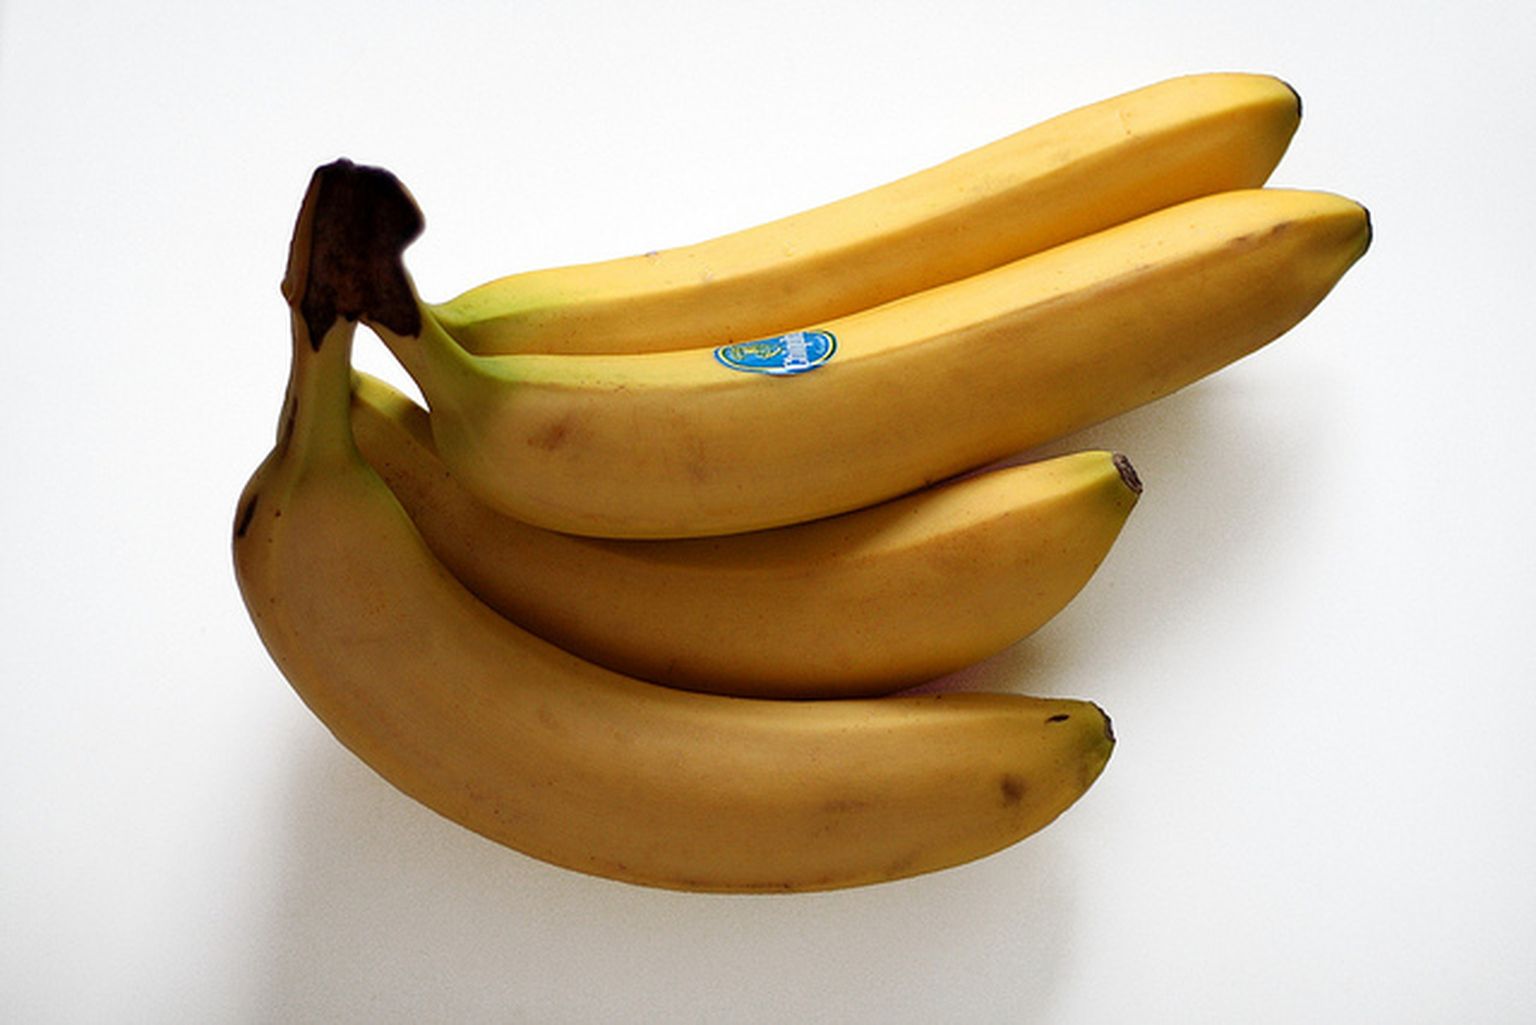 Banaanid.